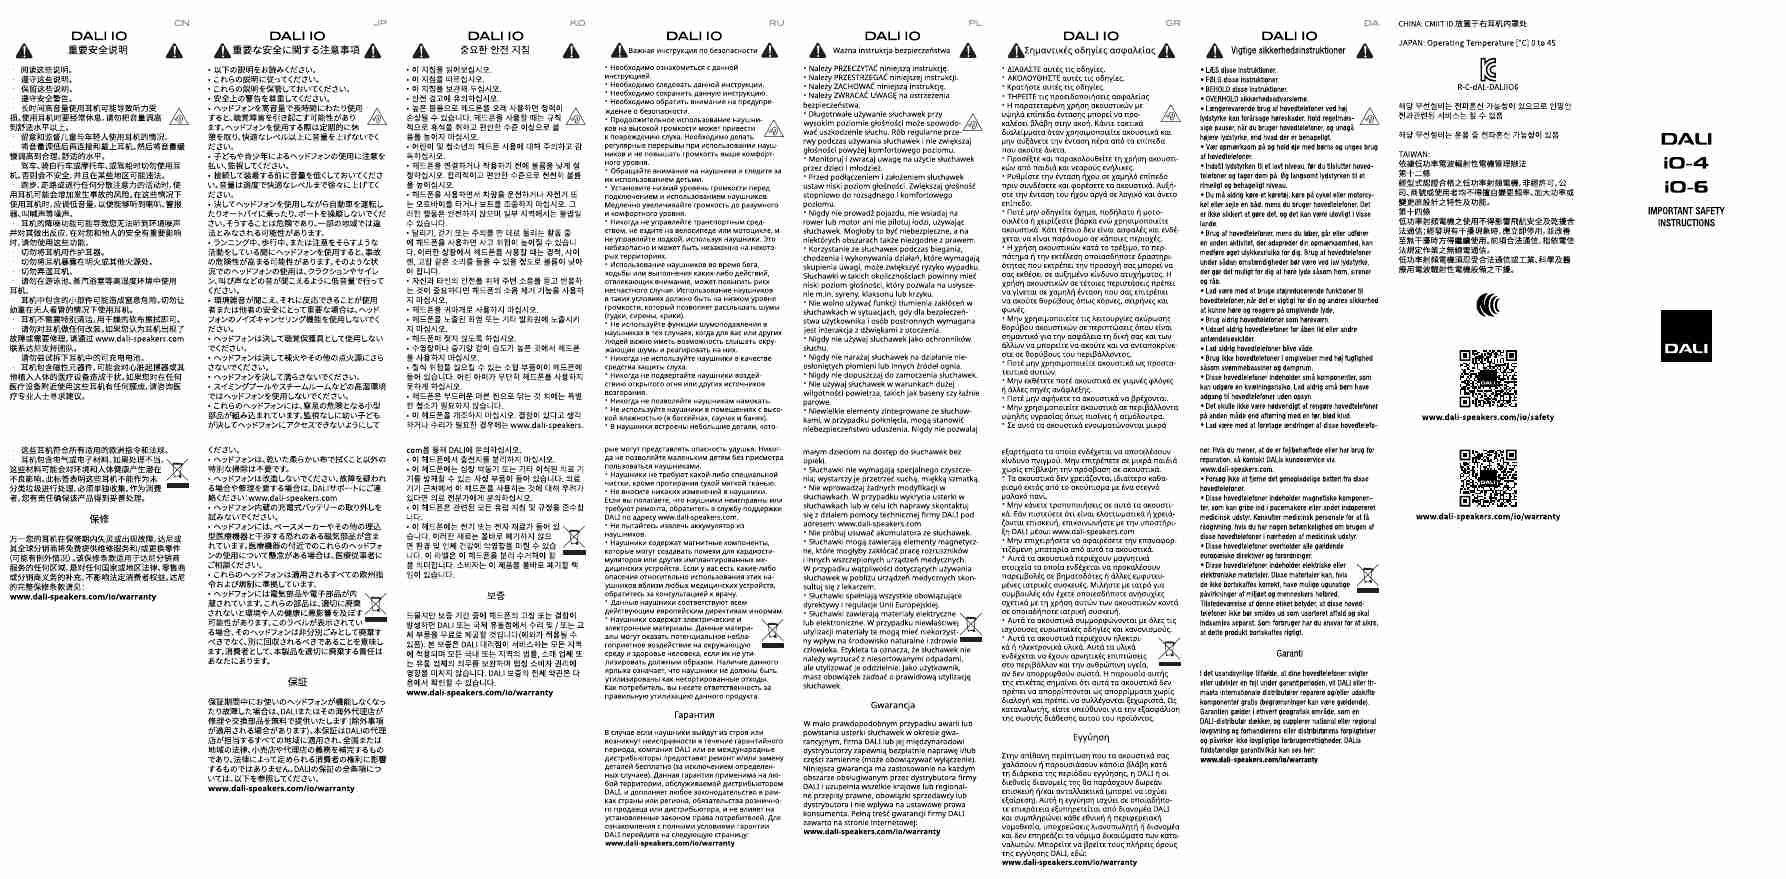 DALI IO-6-page_pdf